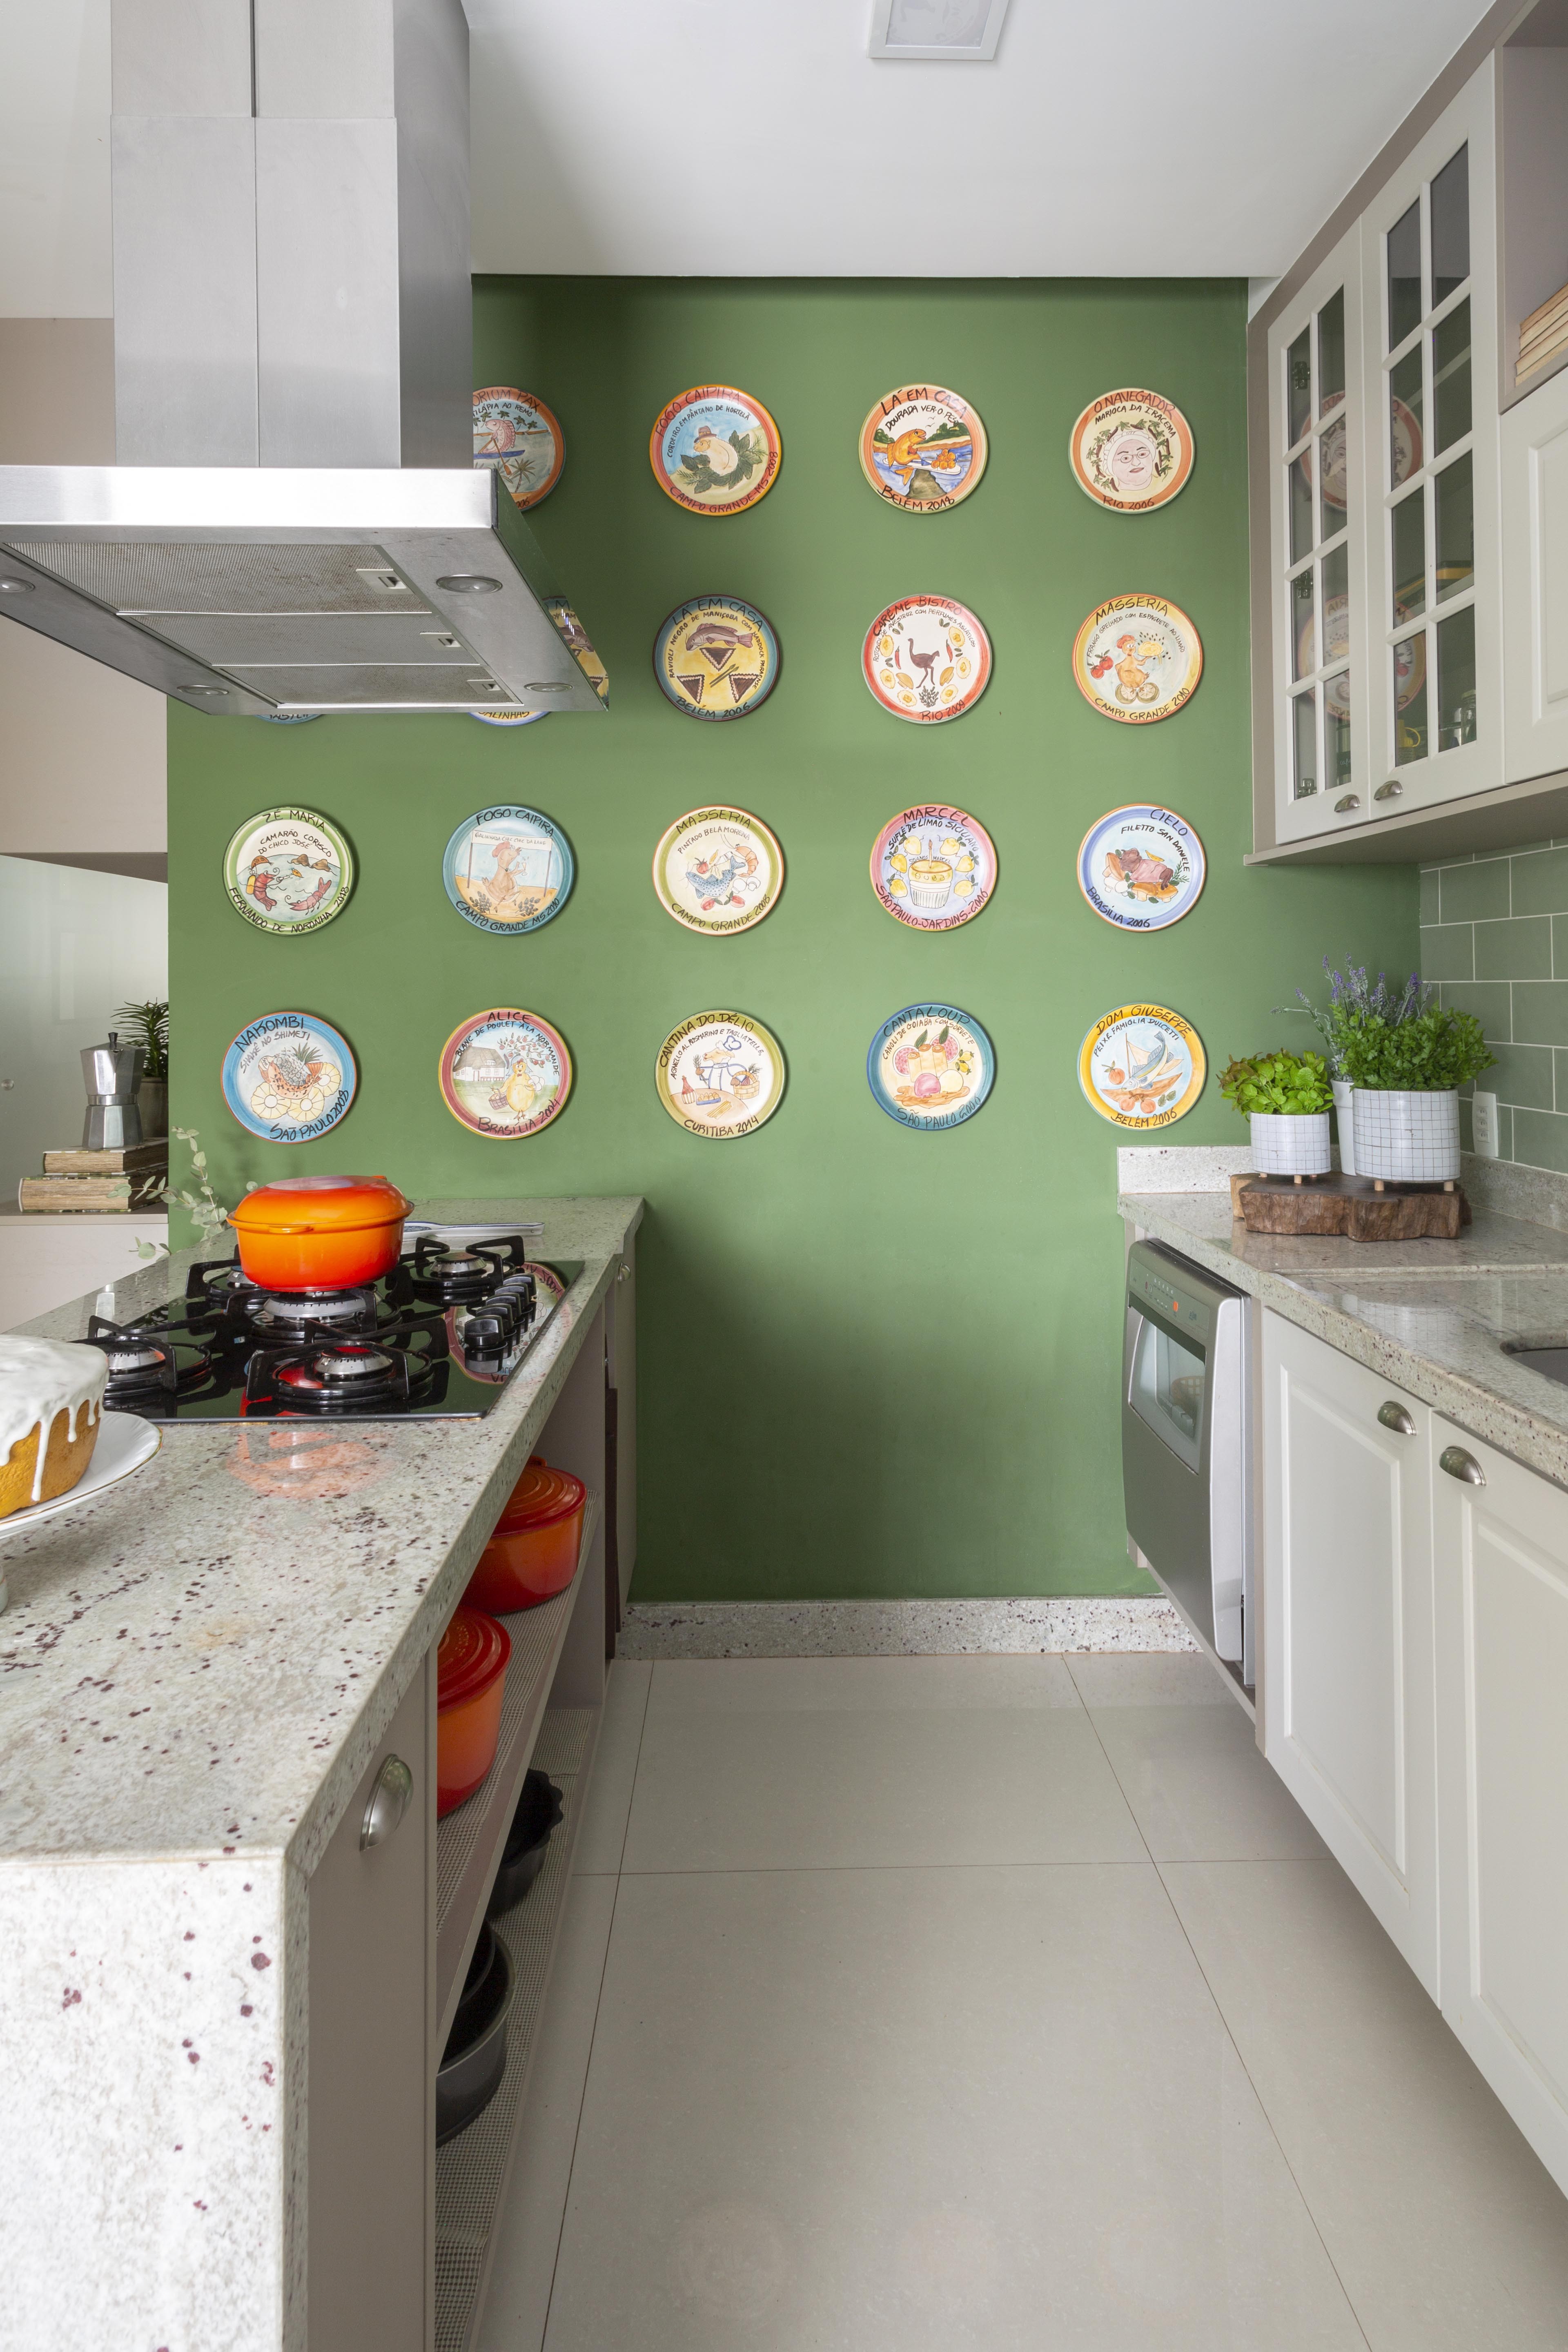 Décor do dia: cozinha em verde pistache com pratos pendurados na parede (Foto: Renata Freitas)